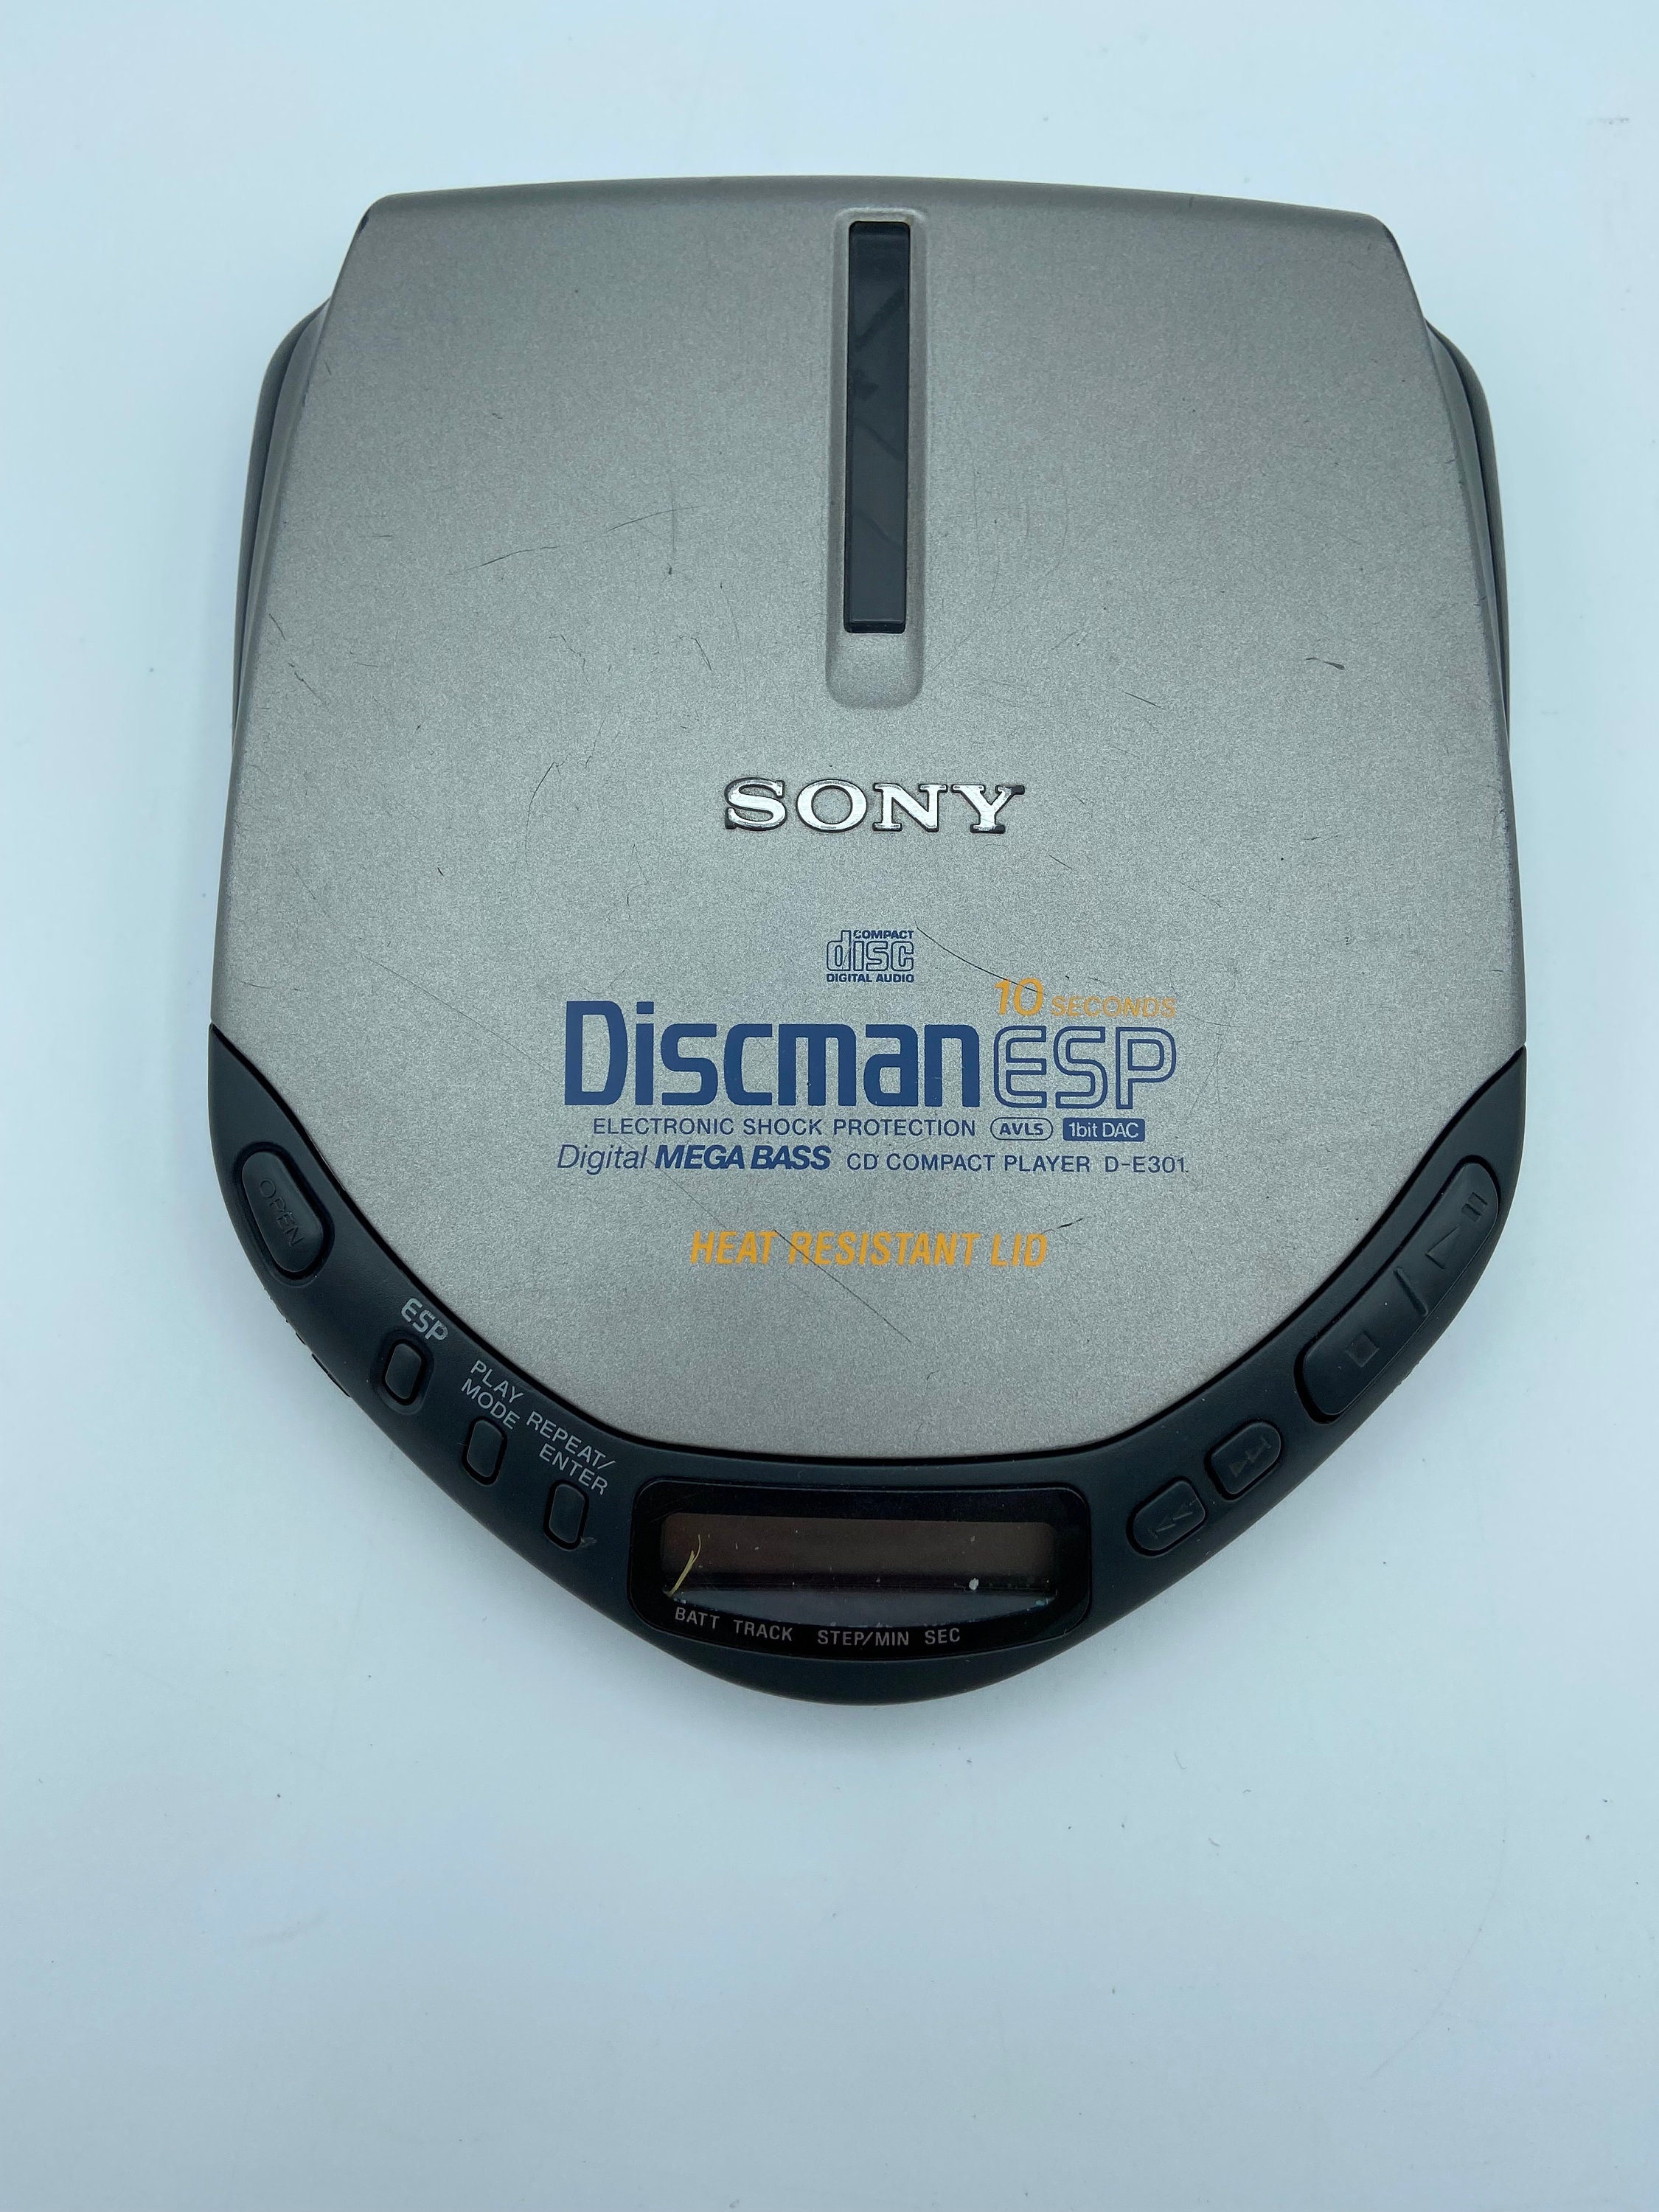 Reproductor de CD Sony Discman ESP D-E301 que no funciona Piezas o  reparación Condición aceptable, limpiado y probado Envío rápido Hogar libre  de humo -  España